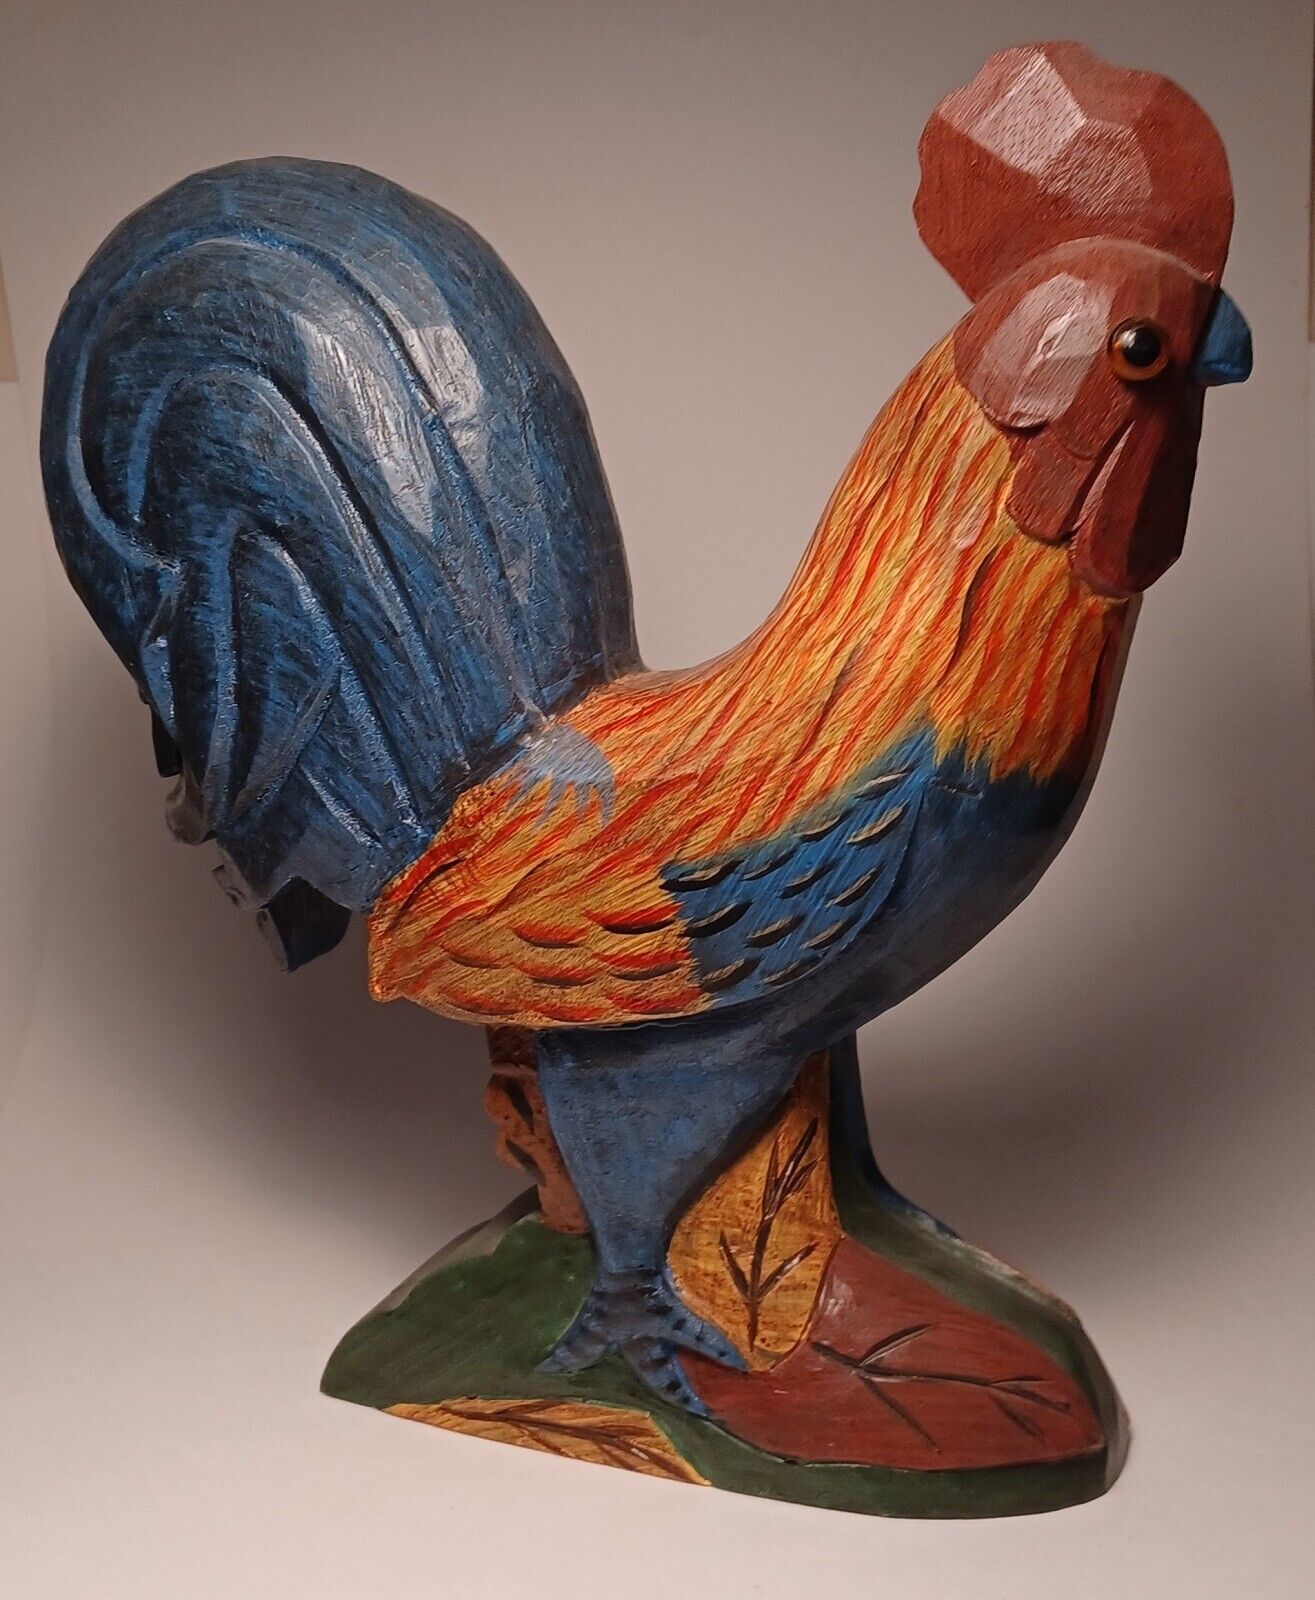 Vintage Wooden Carved Rooster Figure 10”